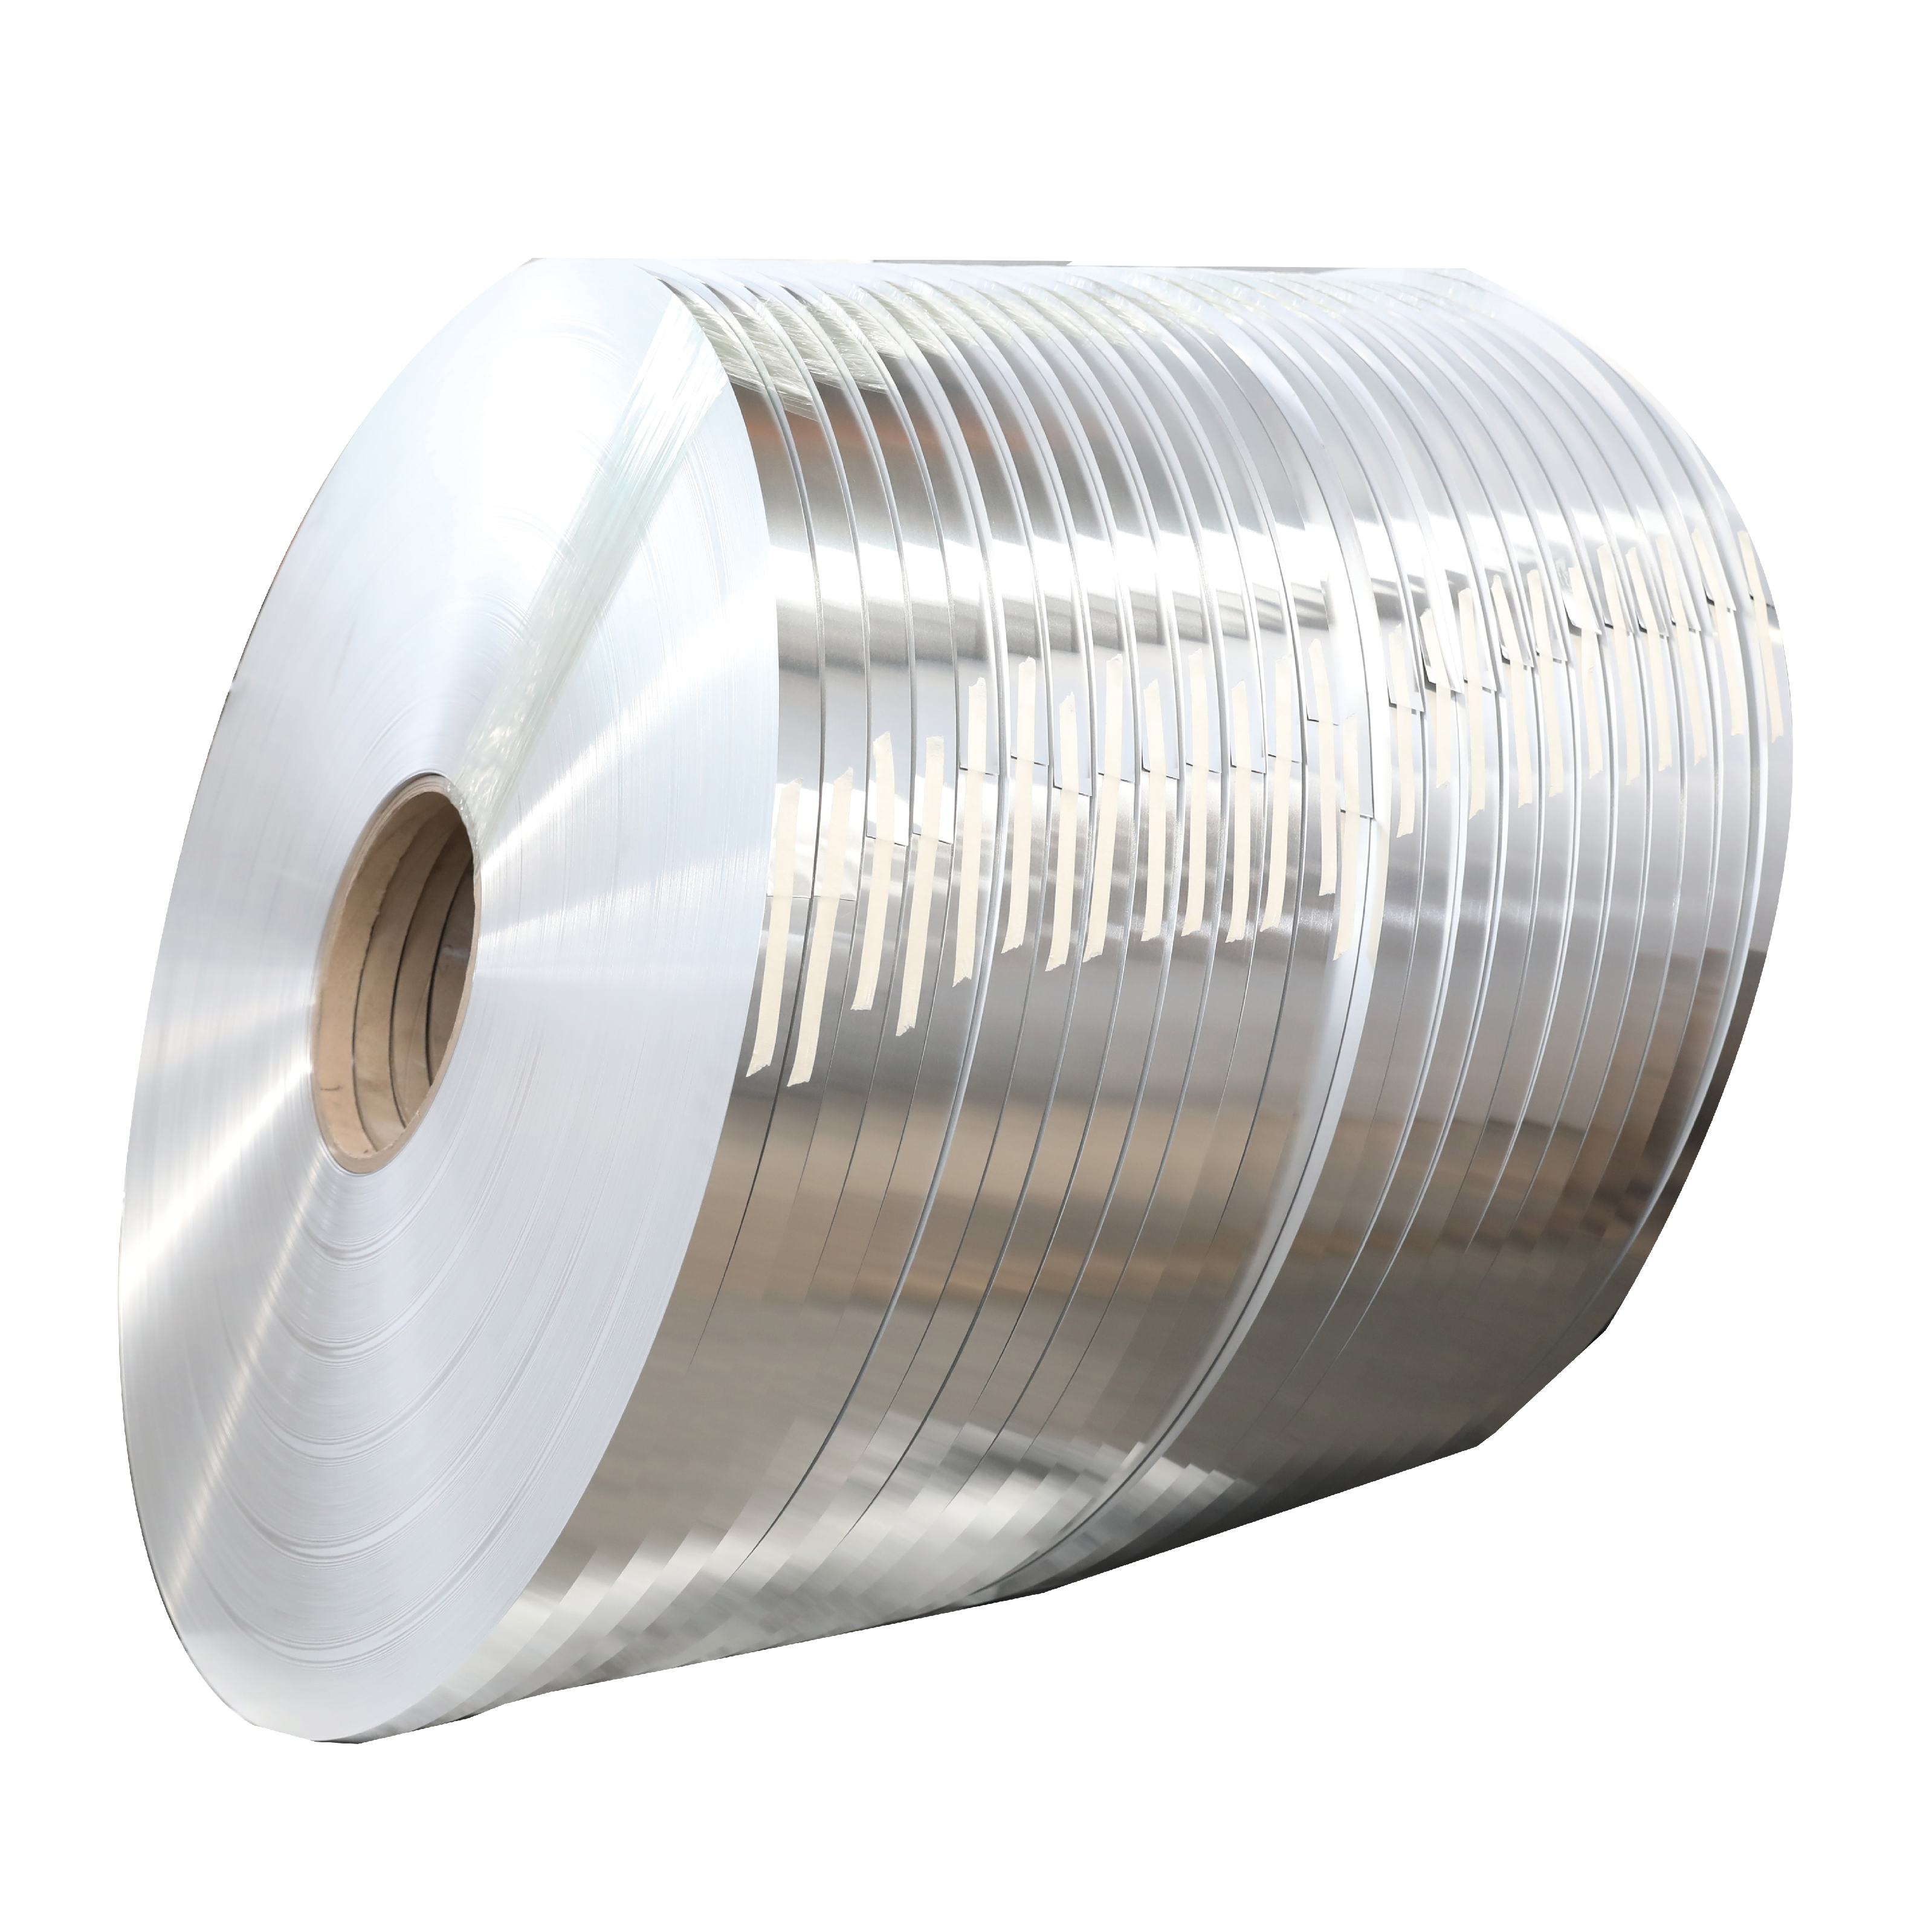 3003 aluminum coils Featured Image